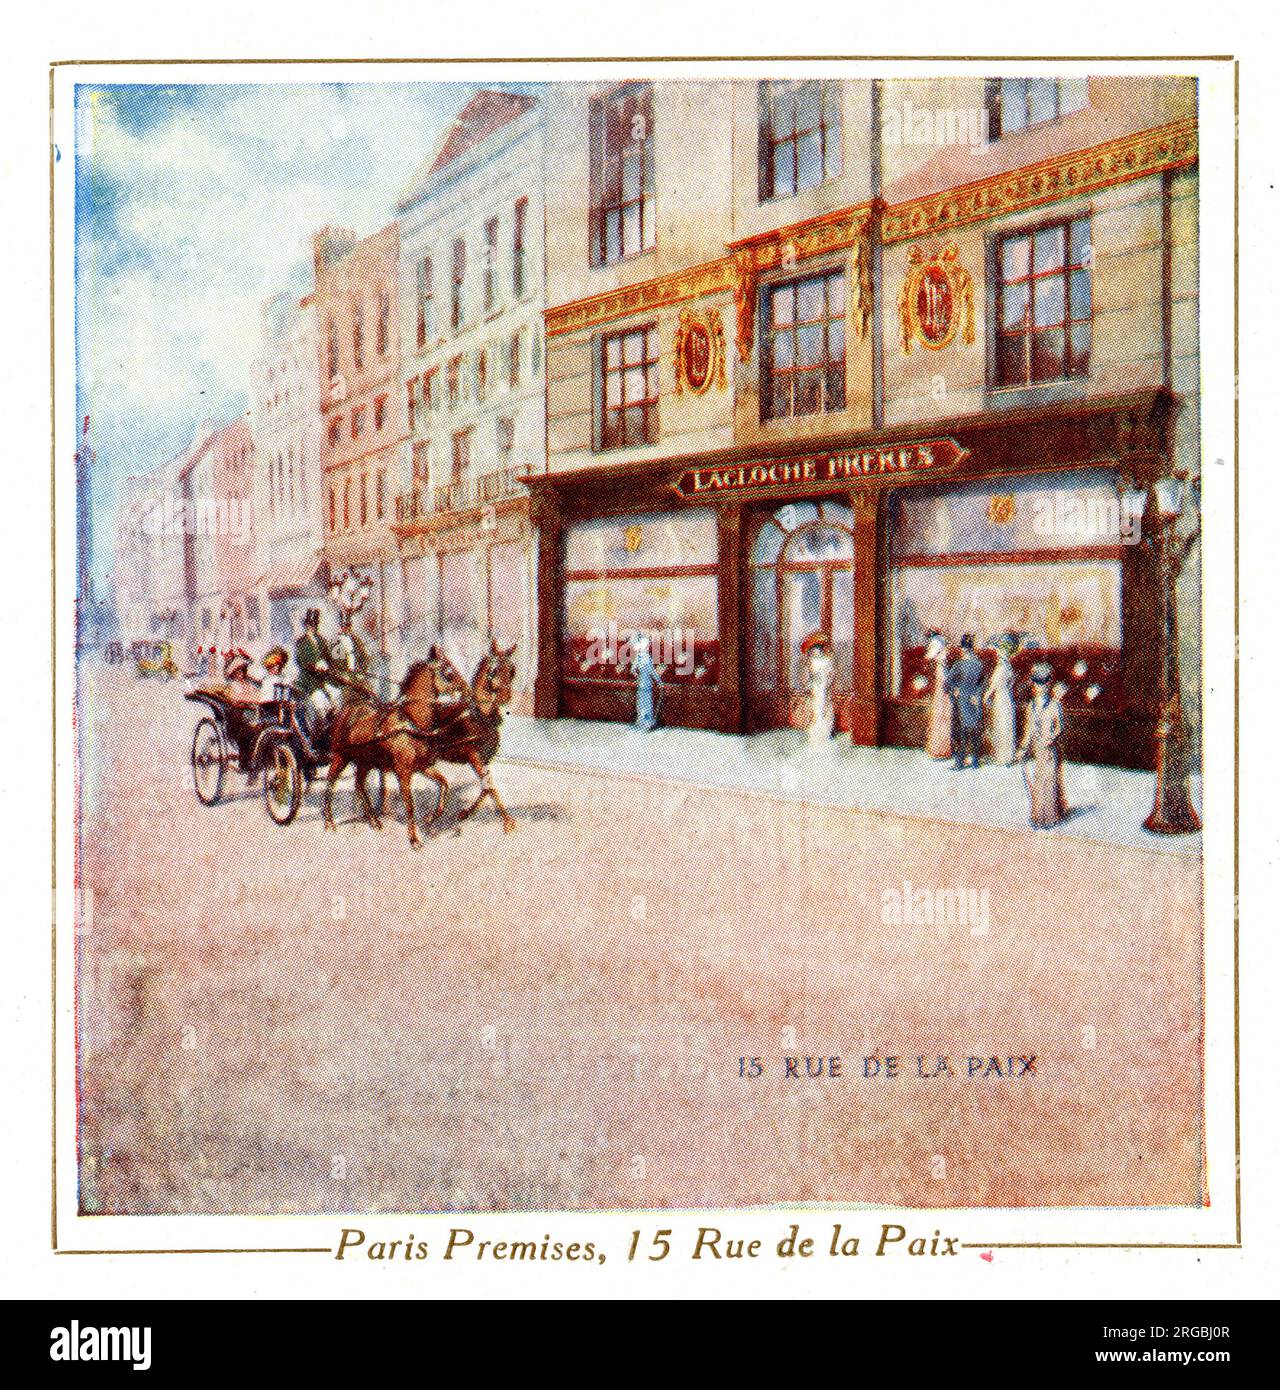 Premises of Lacloche Freres, Jewellers, 15 Rue de la Paix, Paris, France Stock Photo